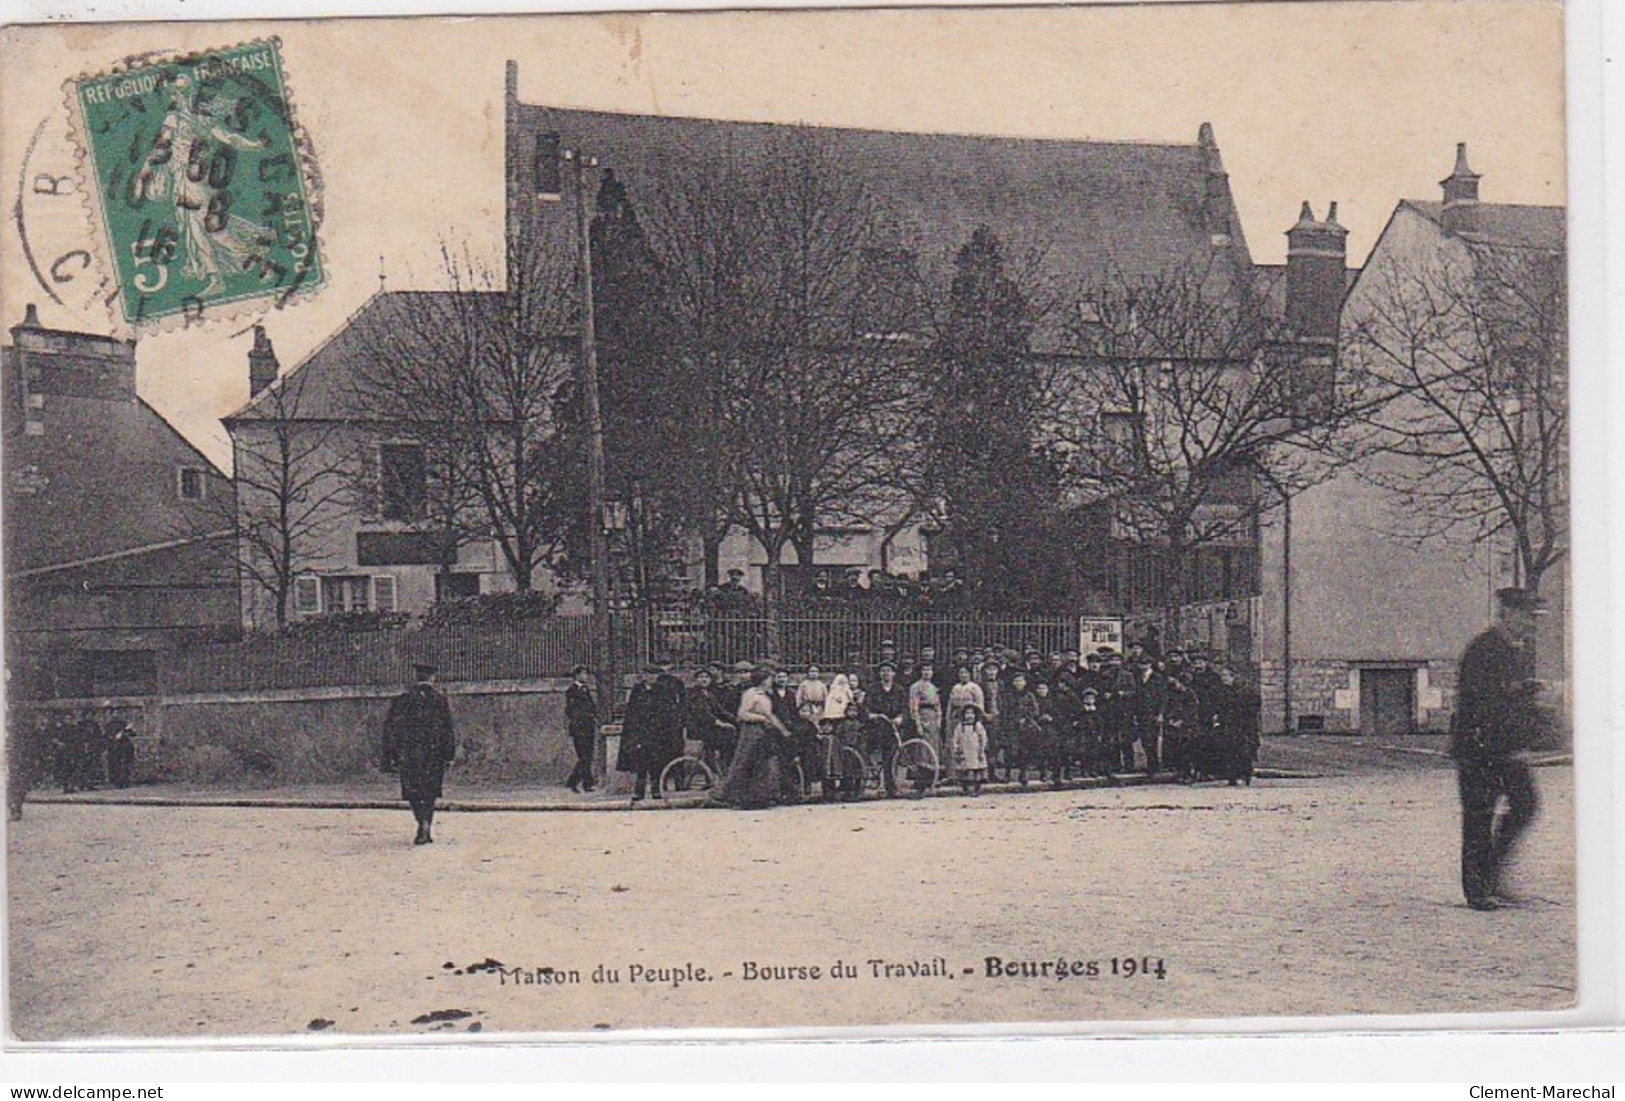 BOURGES : La Maison Du Peuple - Bourse Du Travail - En 1914 - Très Bon état - Bourges